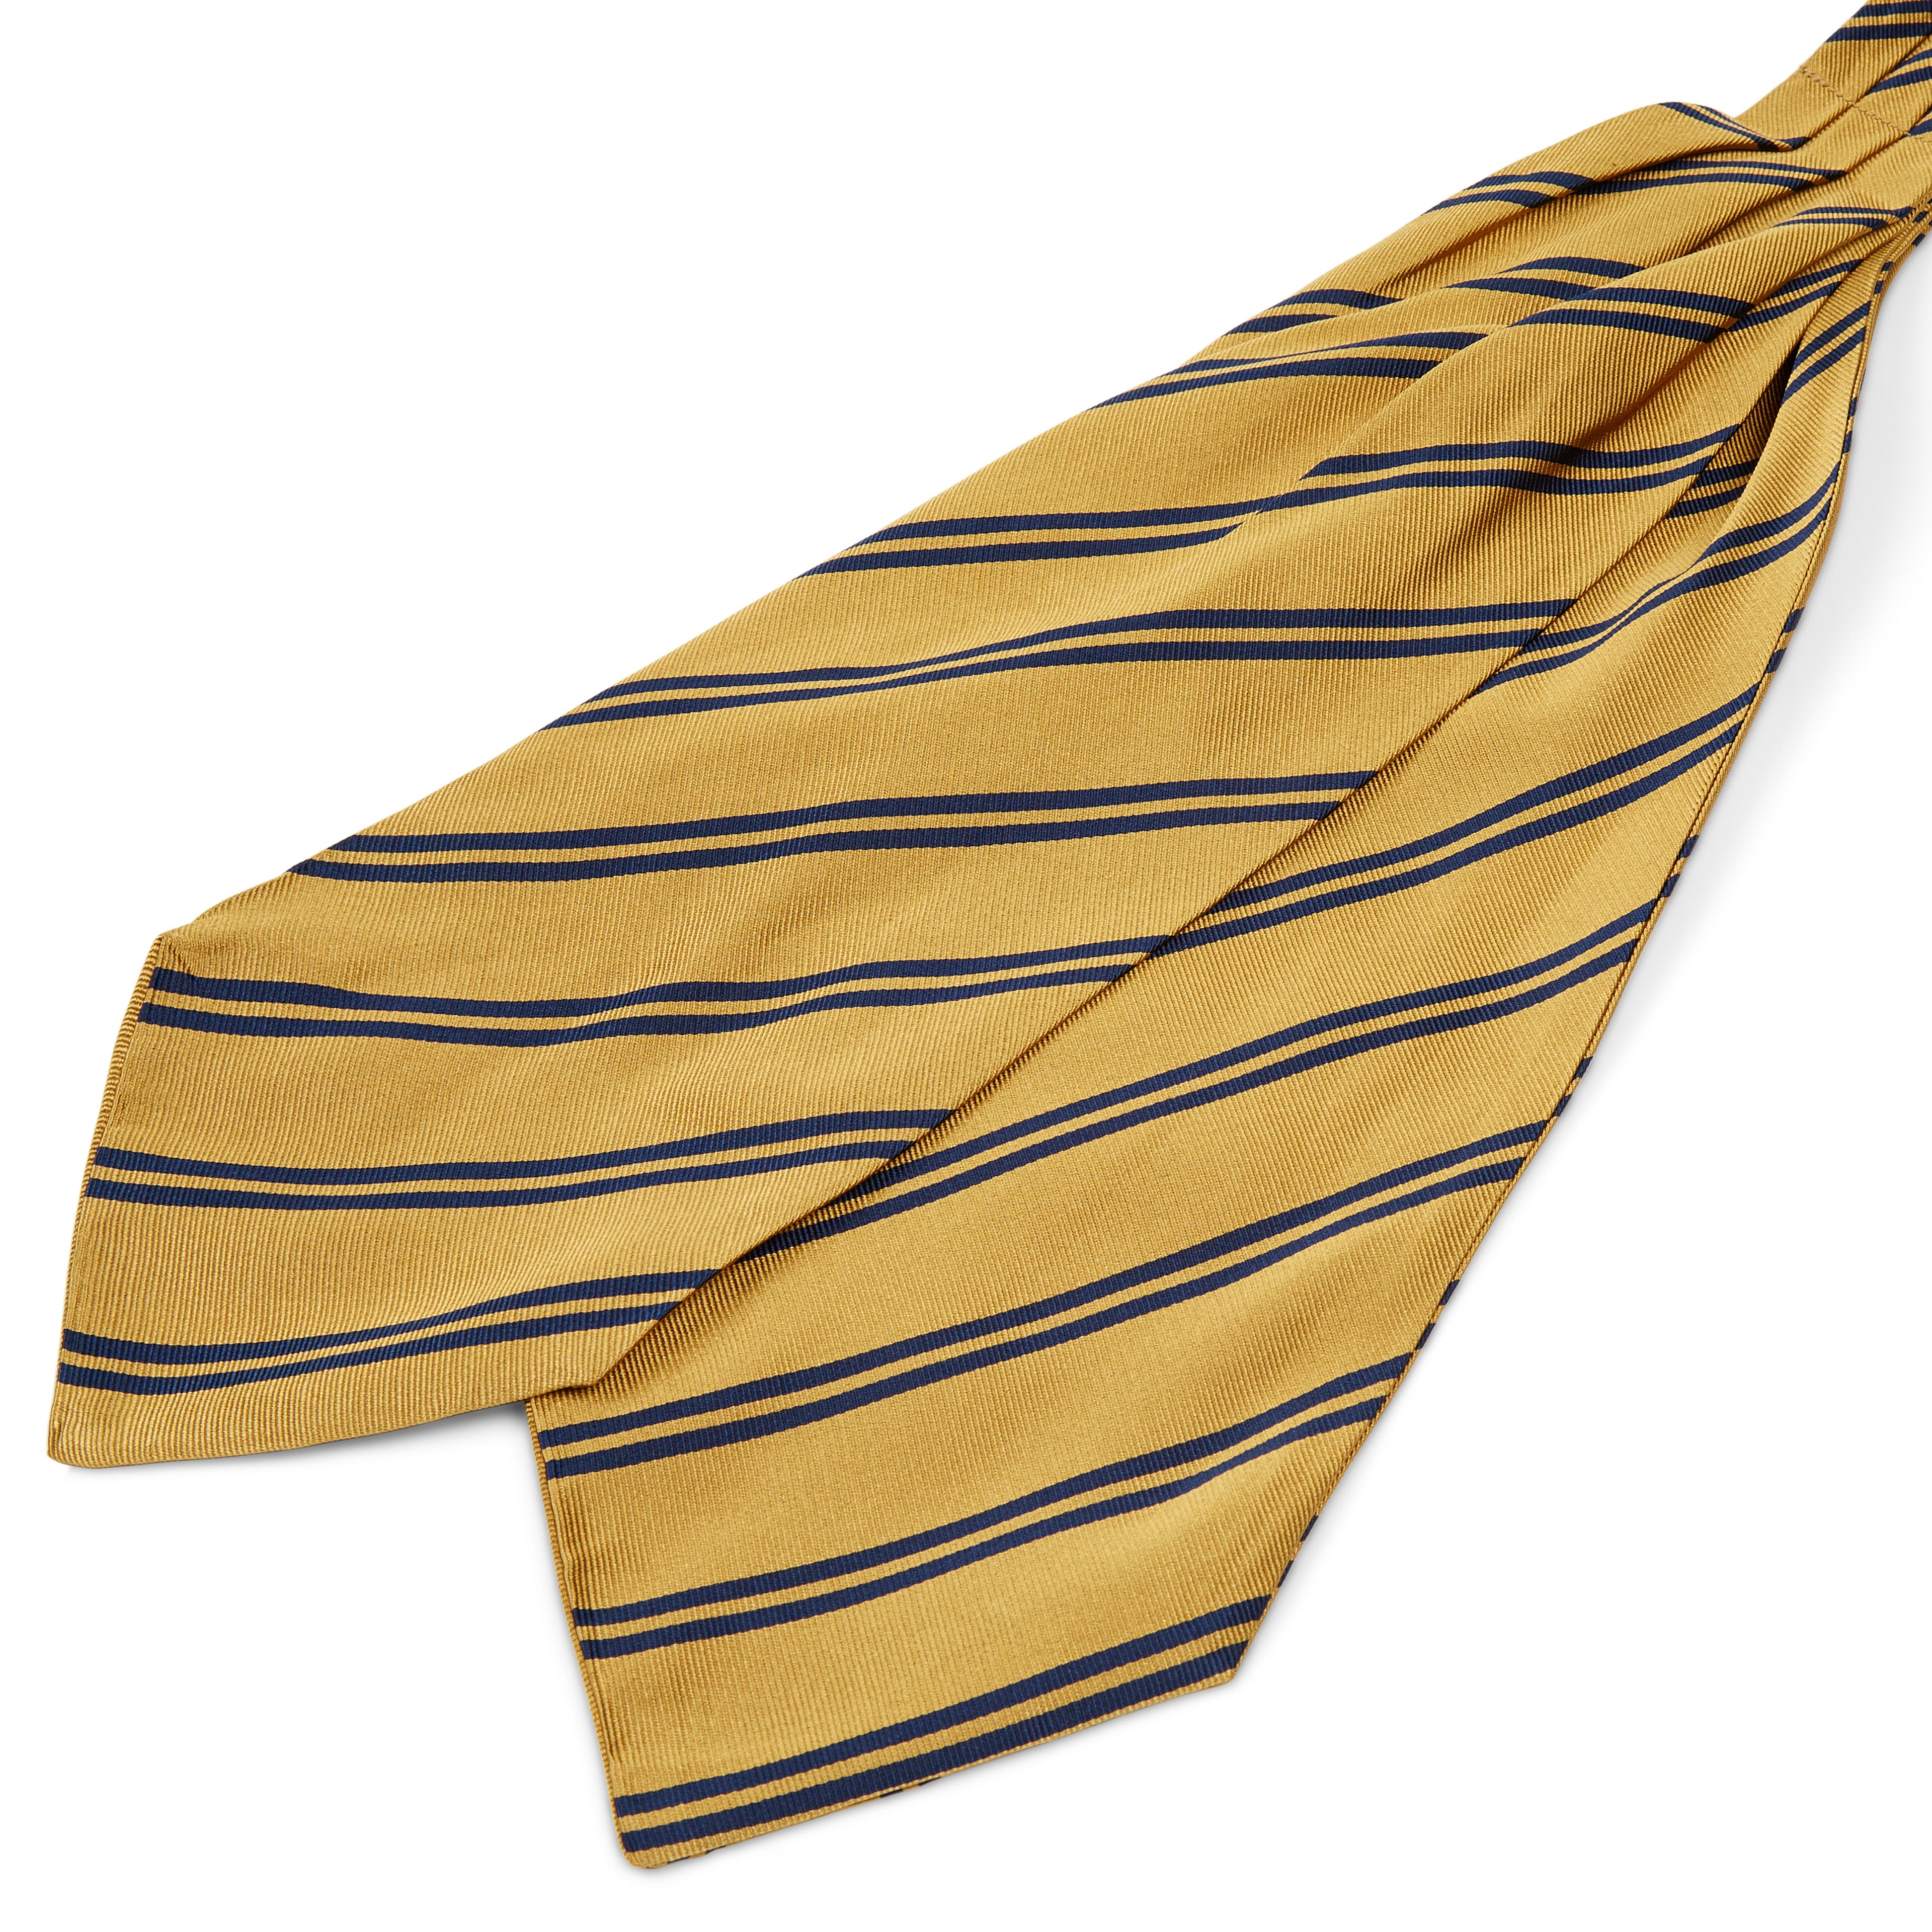 Cravatta ascot in seta oro con doppie righe blu navy